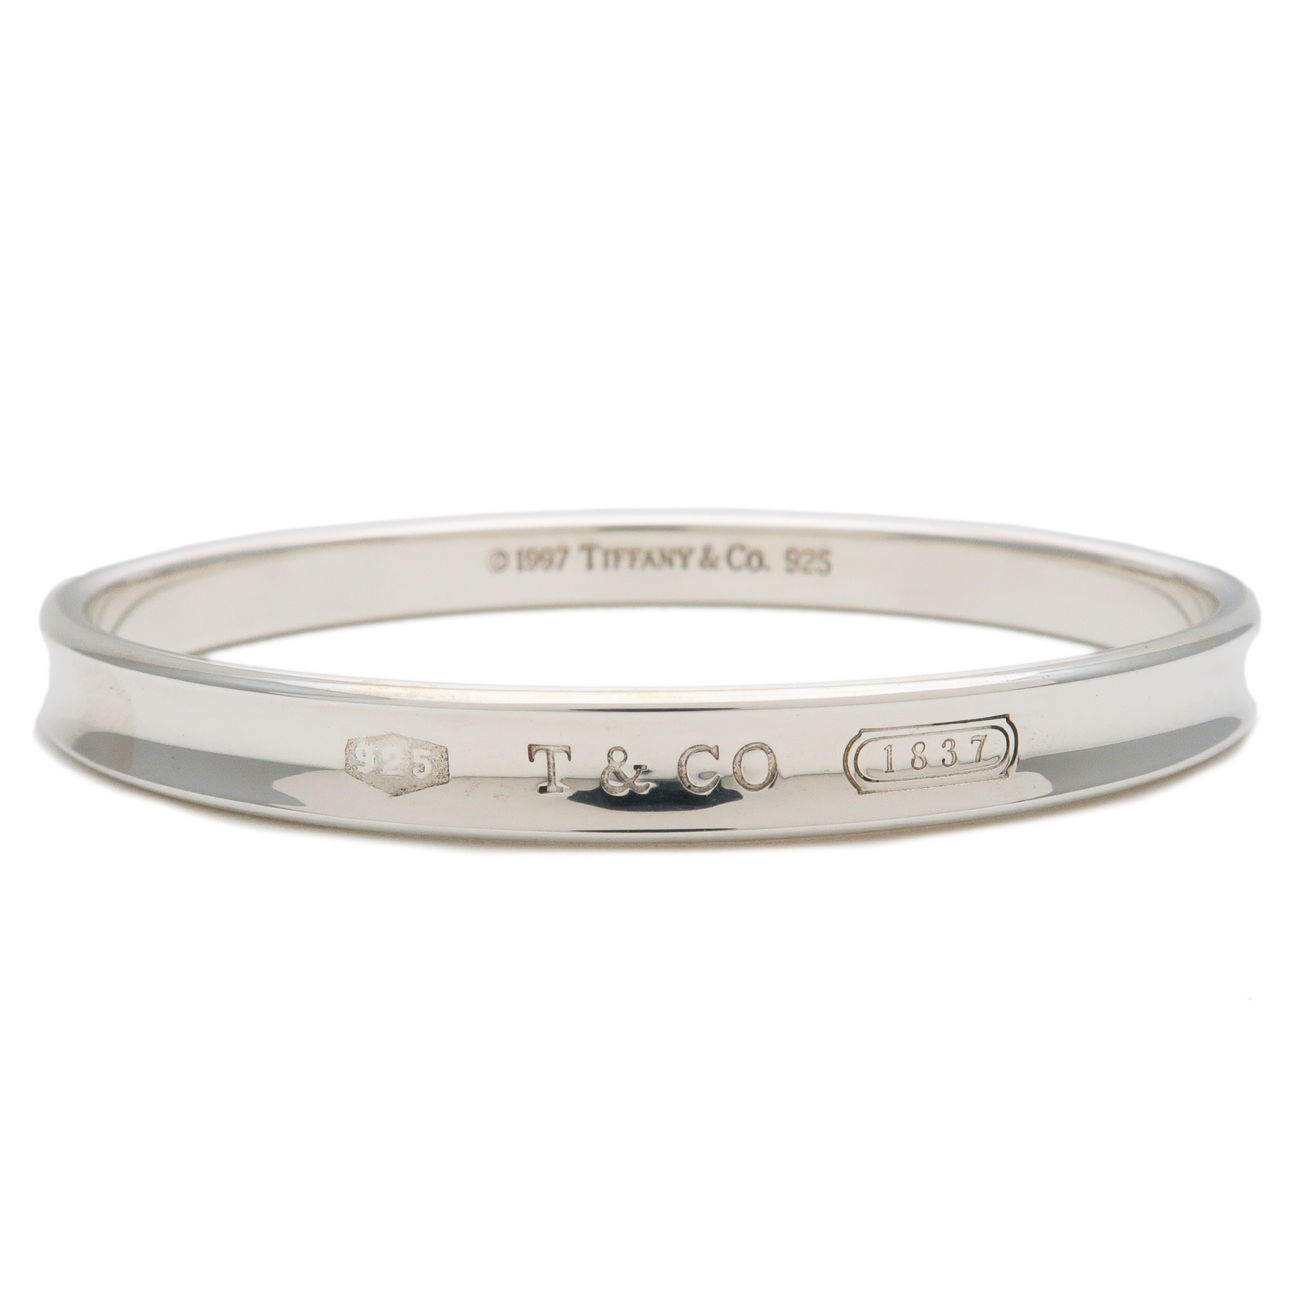 Tiffany&Co. Tiffany 1837 Narrow Bangle Bracelet SV925 Silver